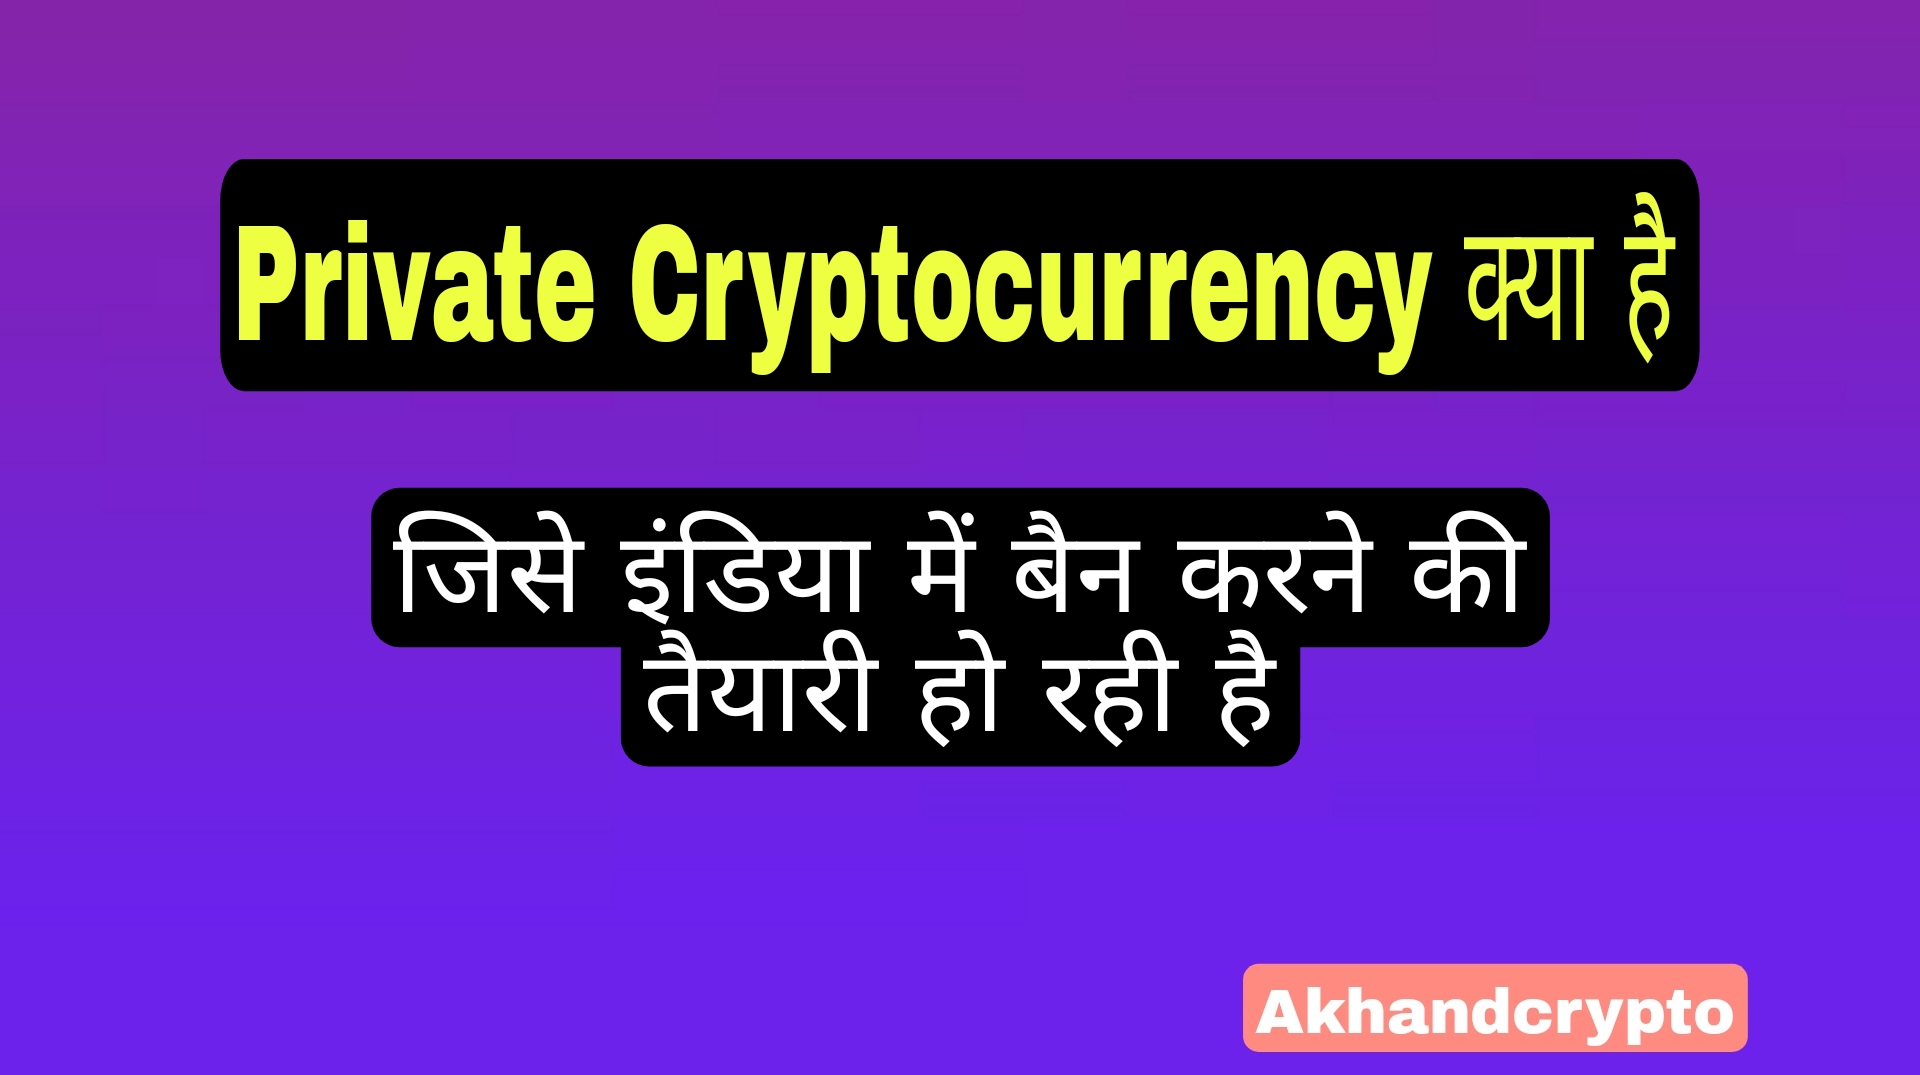 Private Cryptocurrency: क्या है, जिसे इंडियन में बैन करने की तैयारी हो रही है (लिस्ट हिंदी में)